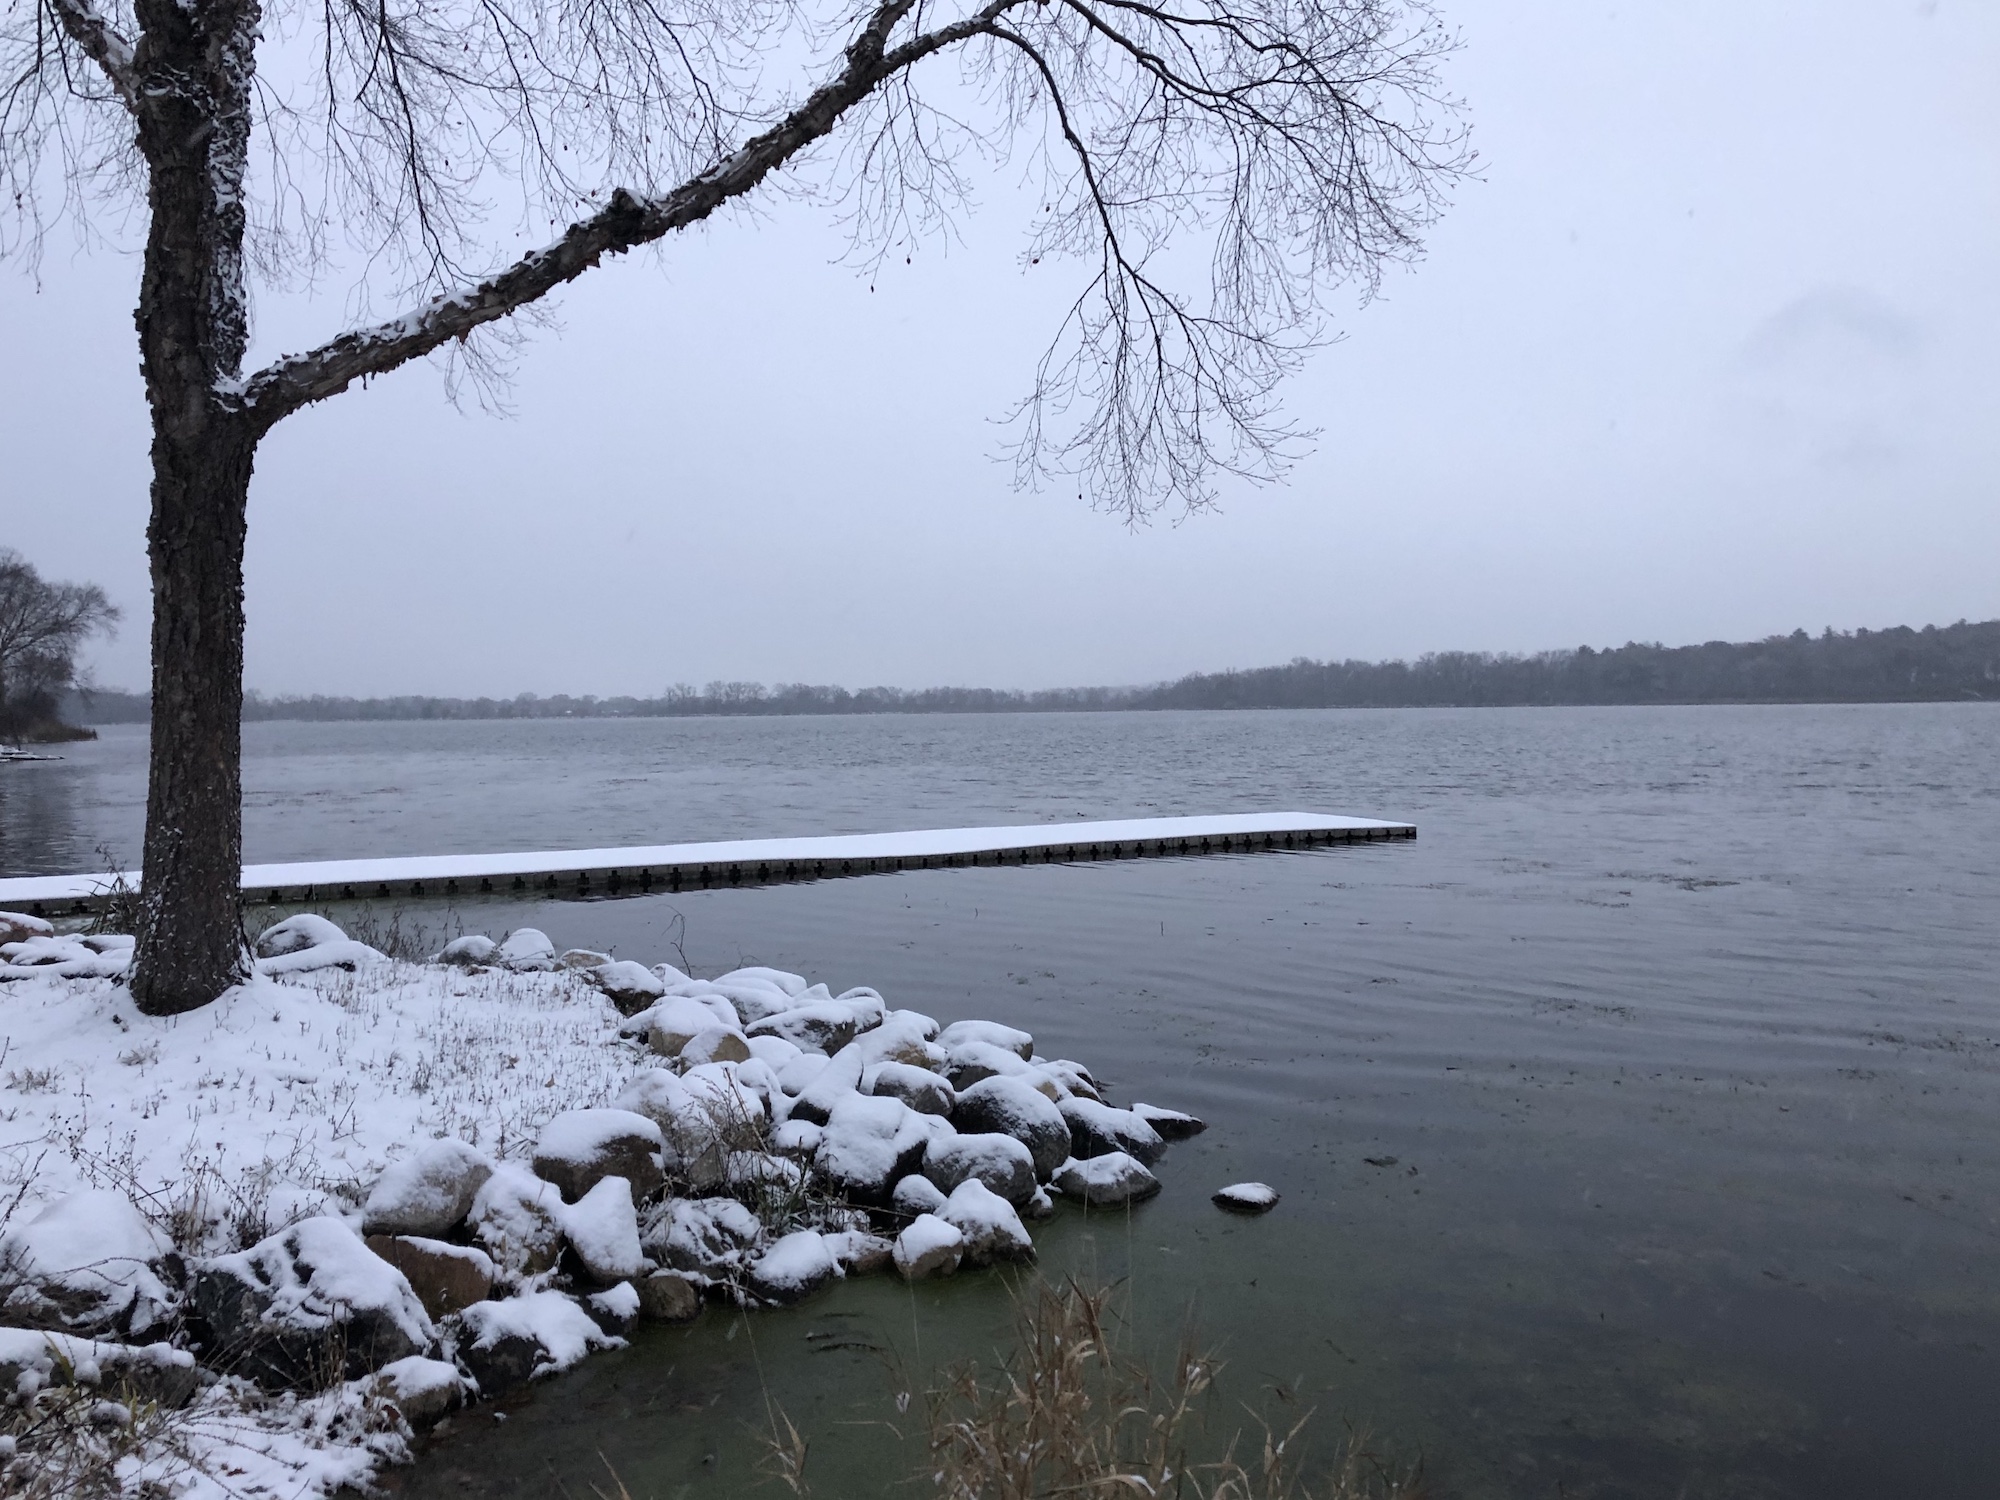 Lake Wingra on November 6, 2019.